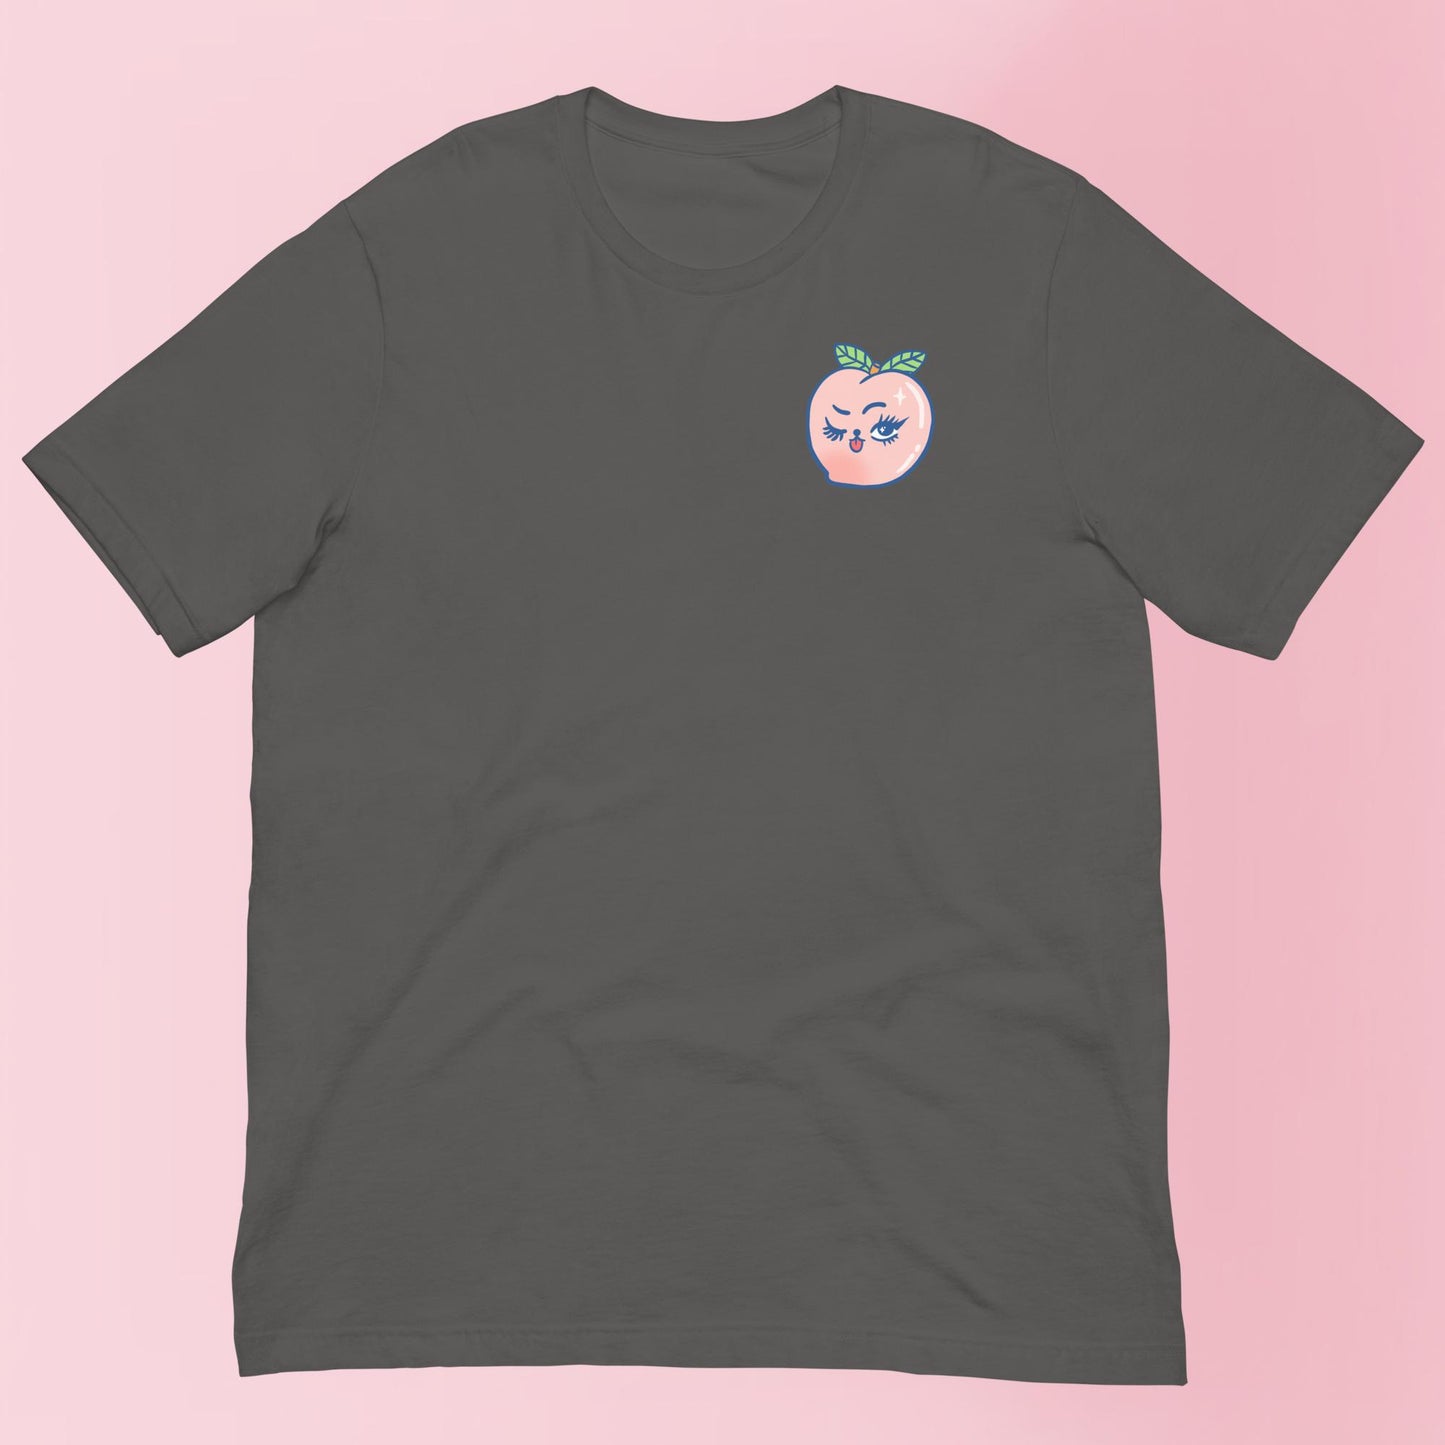 Peachy Keen - Unisex Shirt